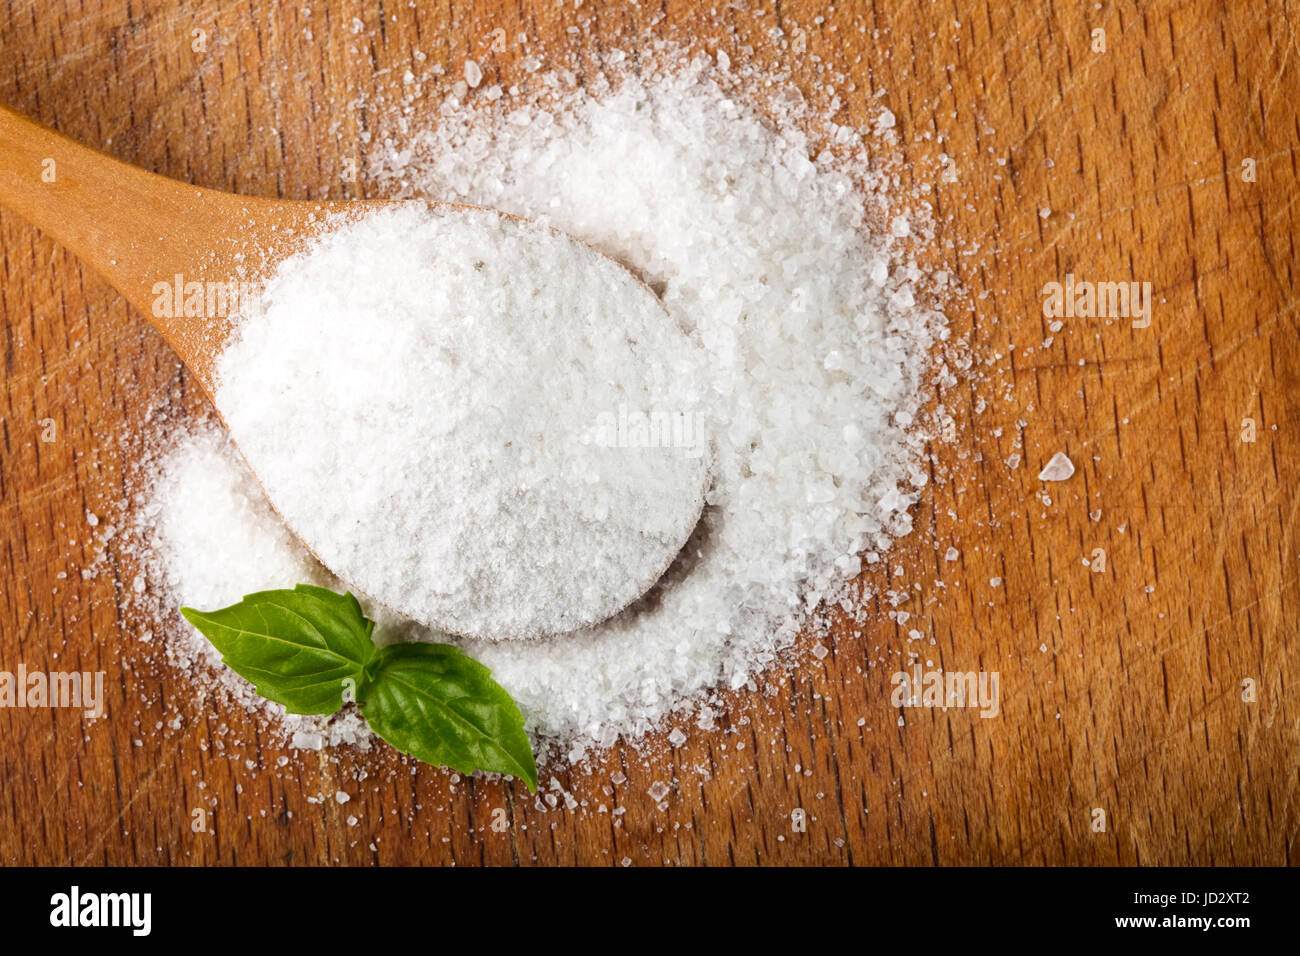 Salz. Grob genarbte Meersalz auf hölzernen Hintergrund Stockfoto